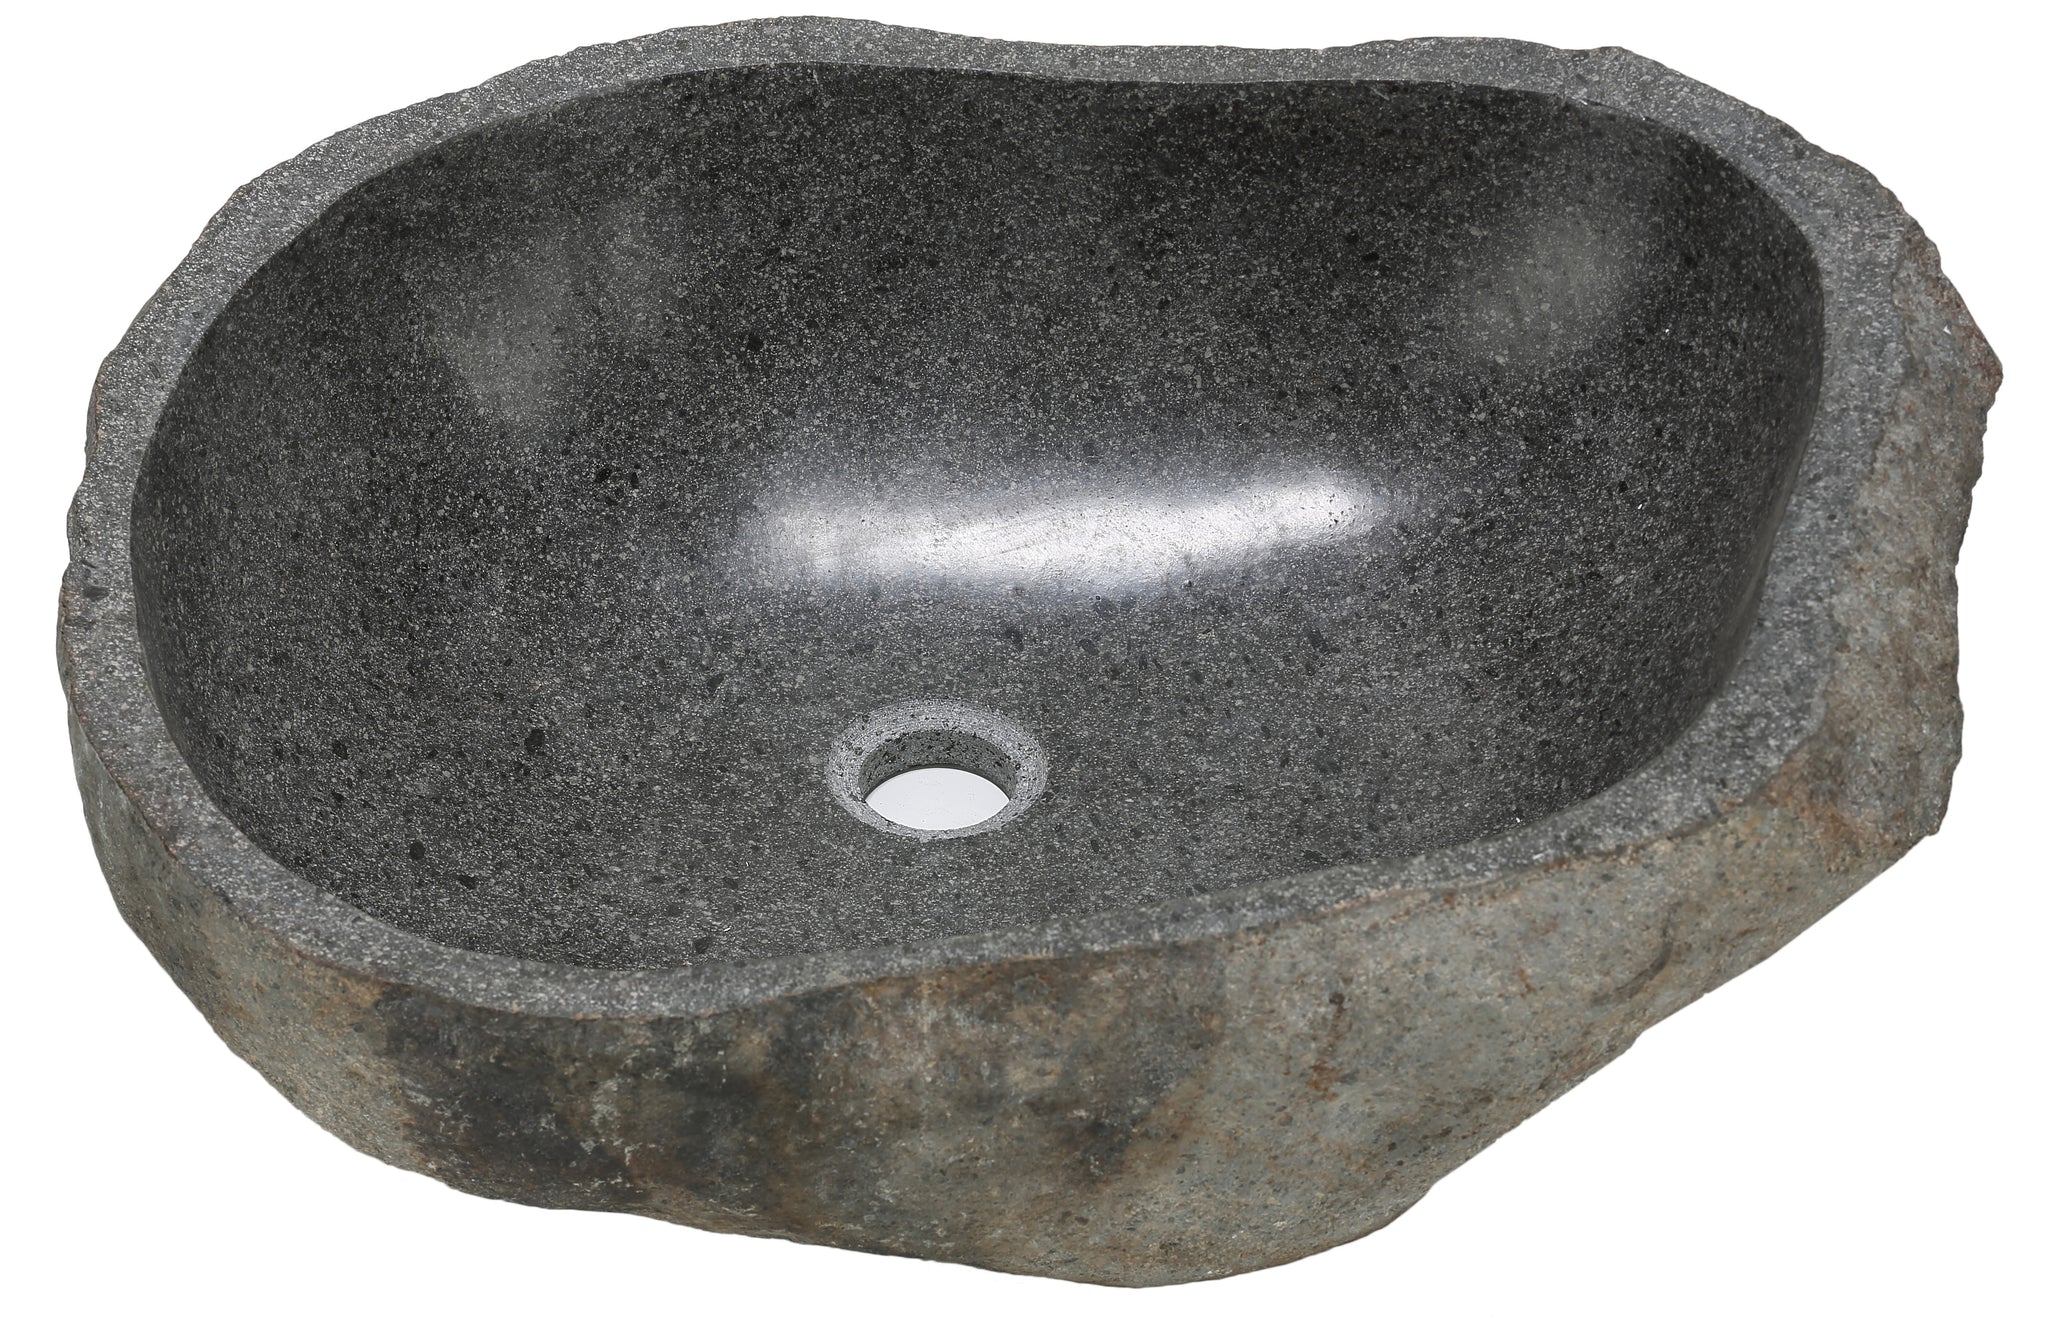 Bare Decor Rio Sink in Natural Stone